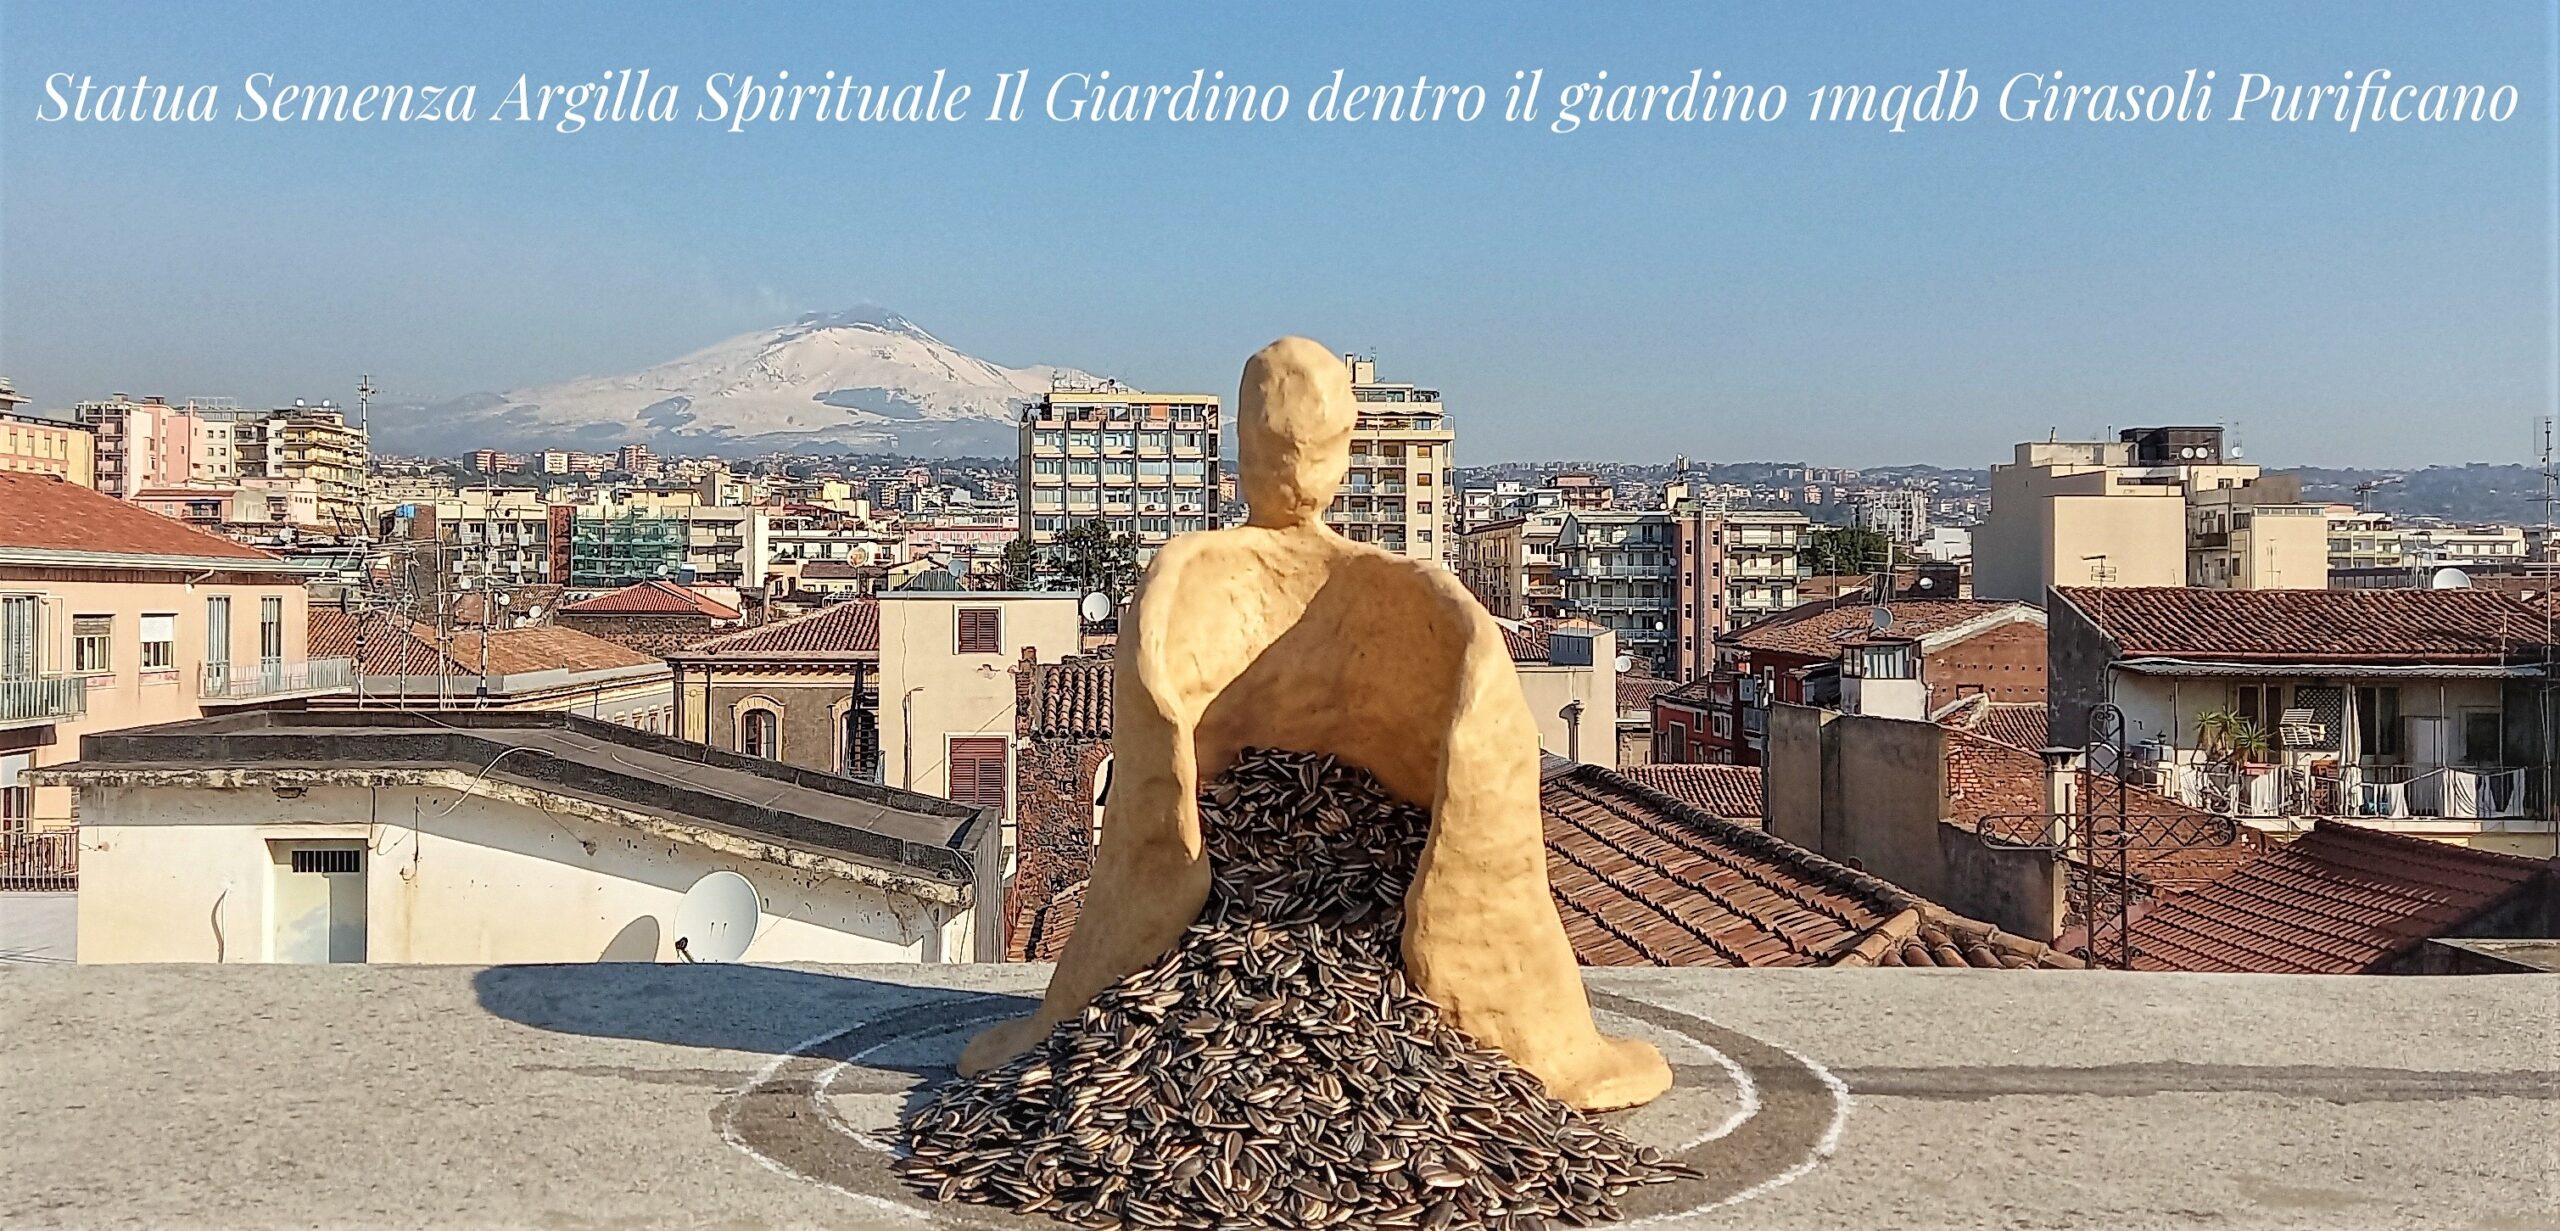 Statua Semenza Palazzo Speciale 1mqdb Argilla Spirituale Arte Involontaria